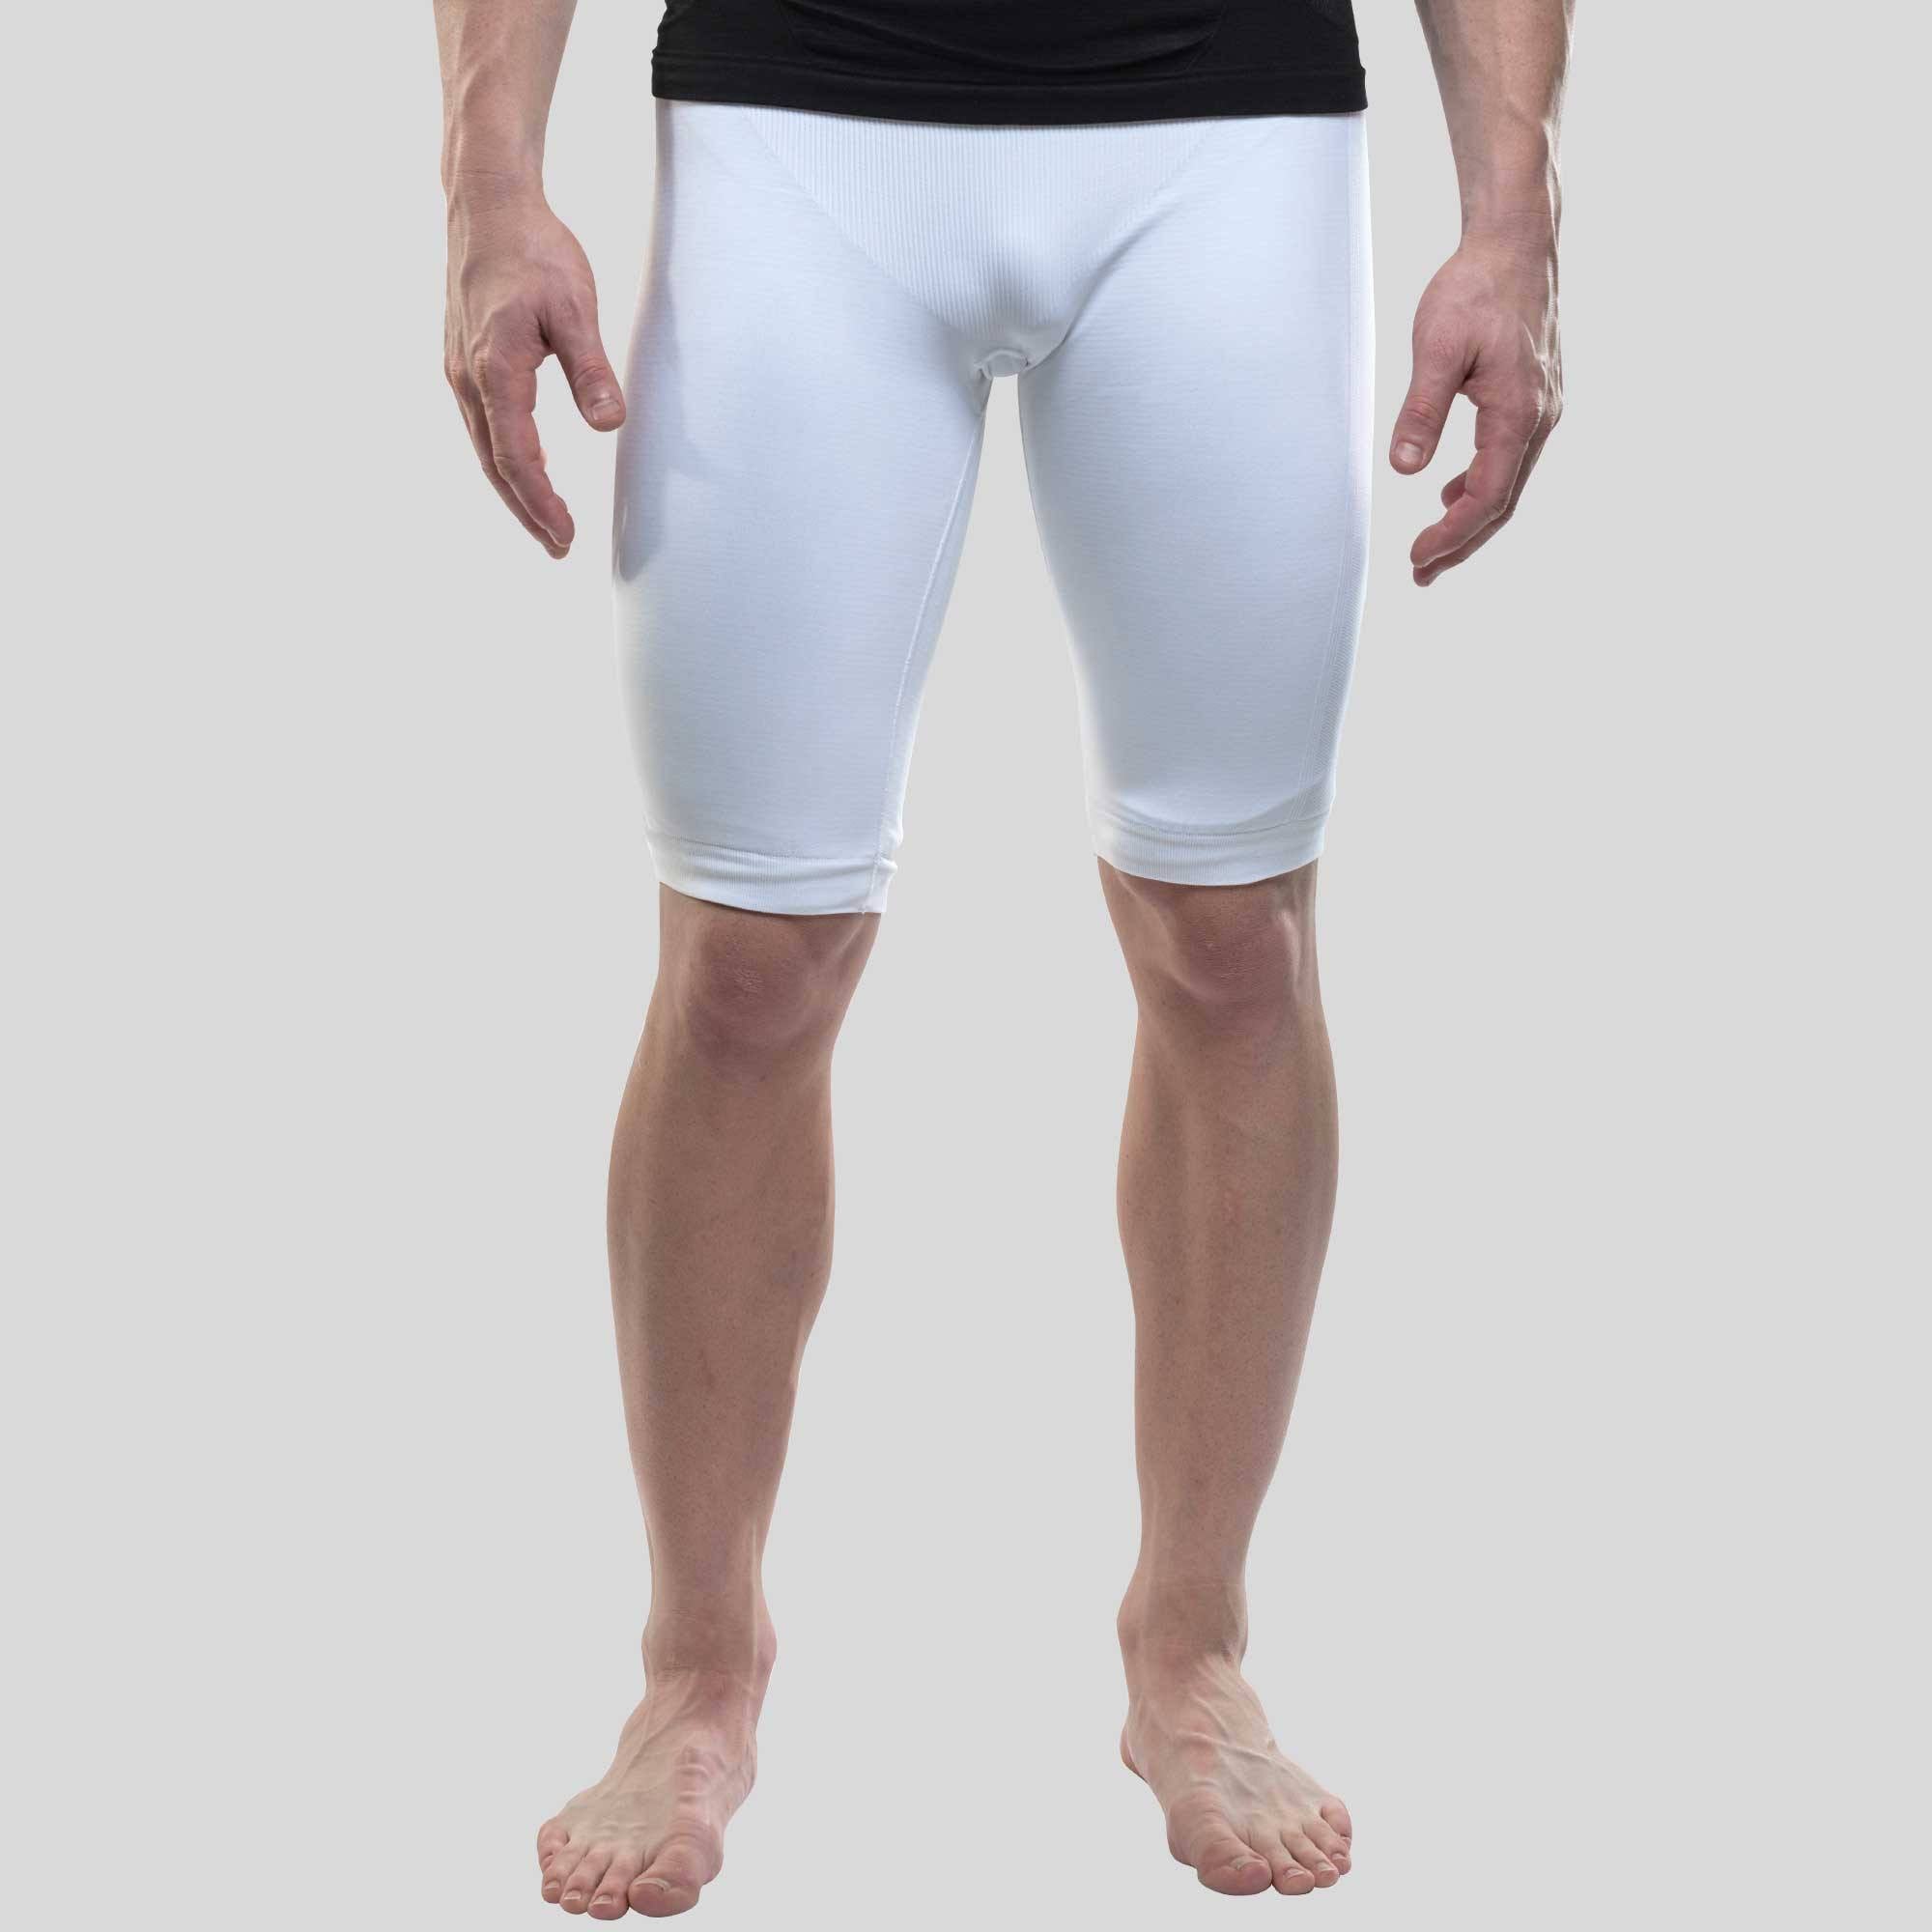  White Mens Compression Shorts, Compression